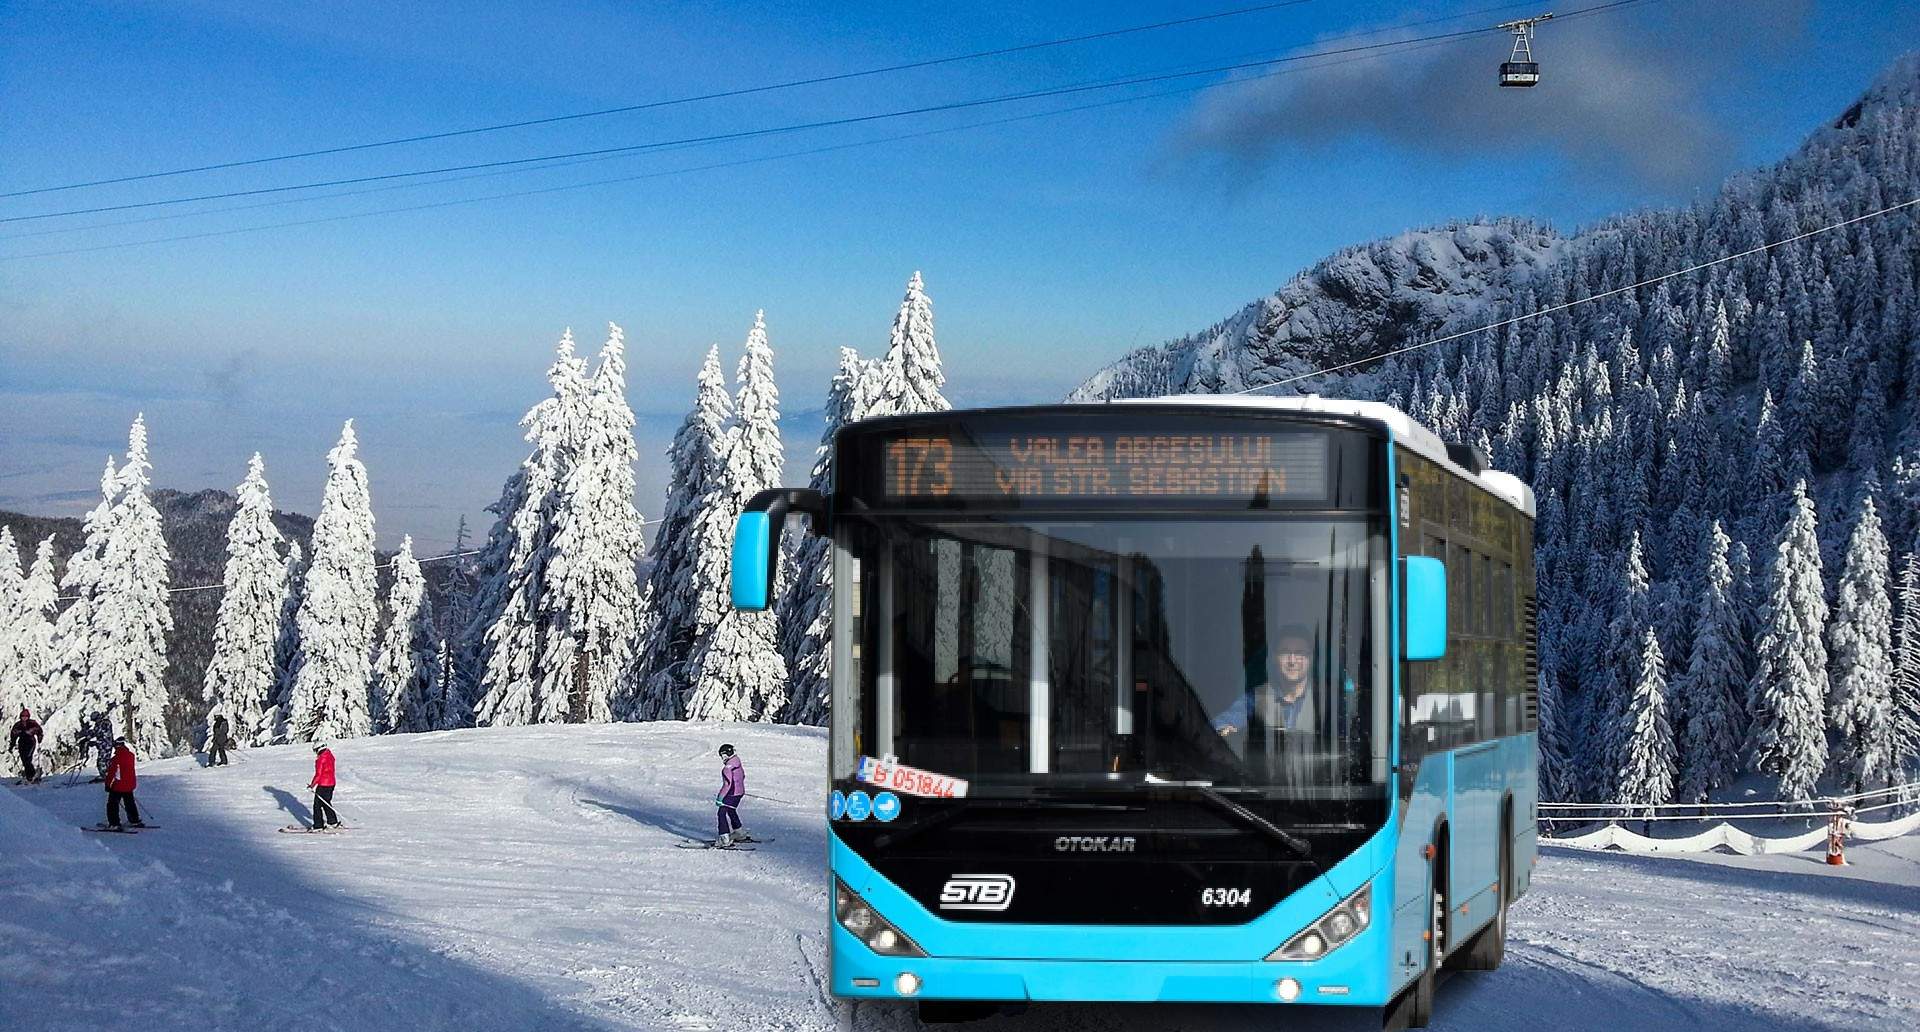 Autobuzele vor deschide ușile doar o dată la trei stații, ca să nu intre frigul